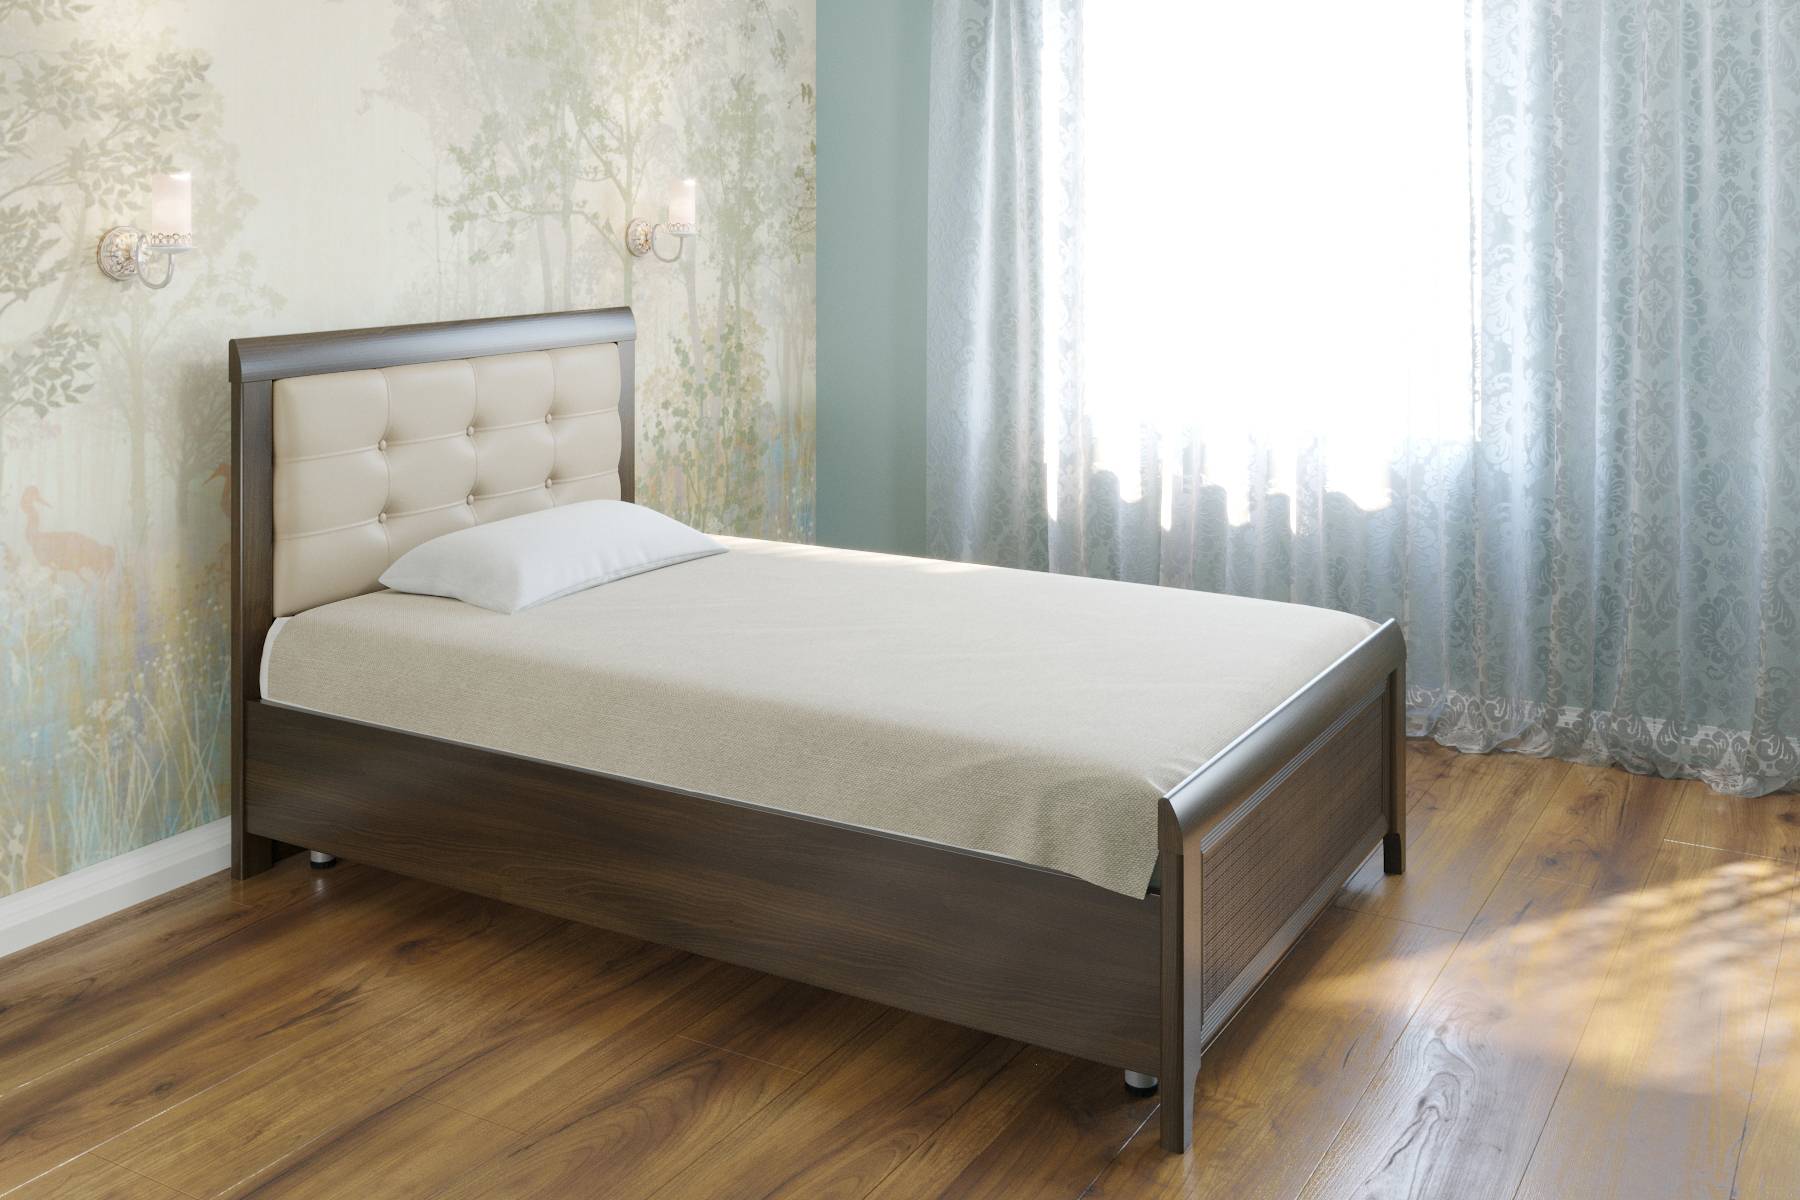 Односпальная кровать (1,2x2,0) КР-2031 – изображение 2